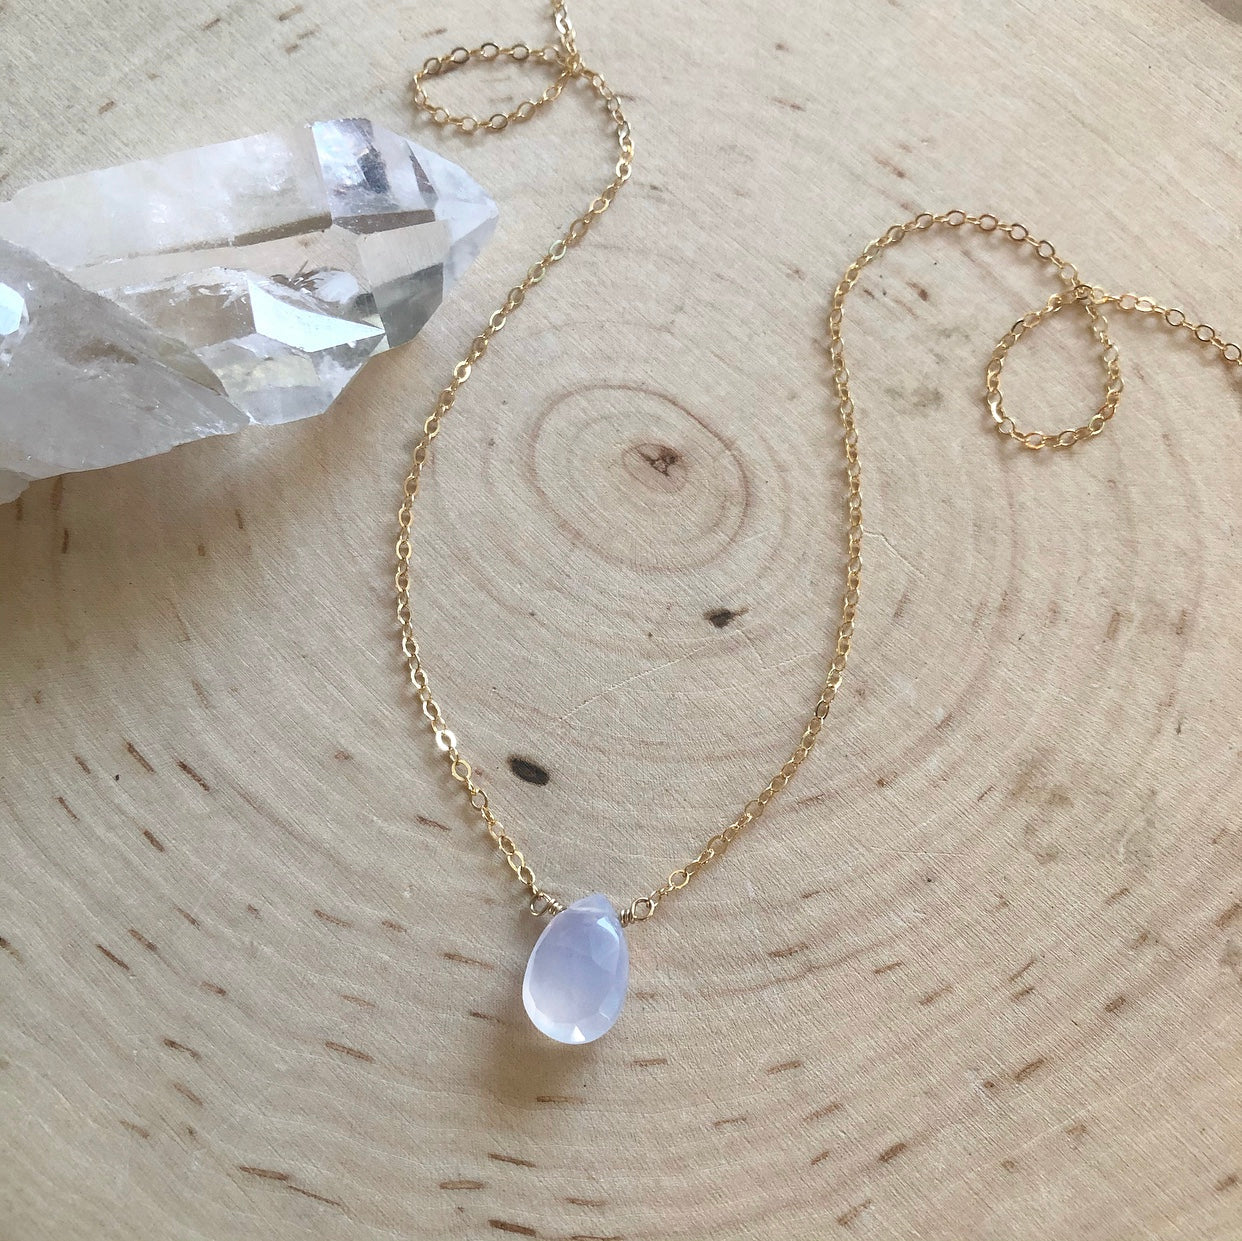 Mini Chalcedony pendant necklace